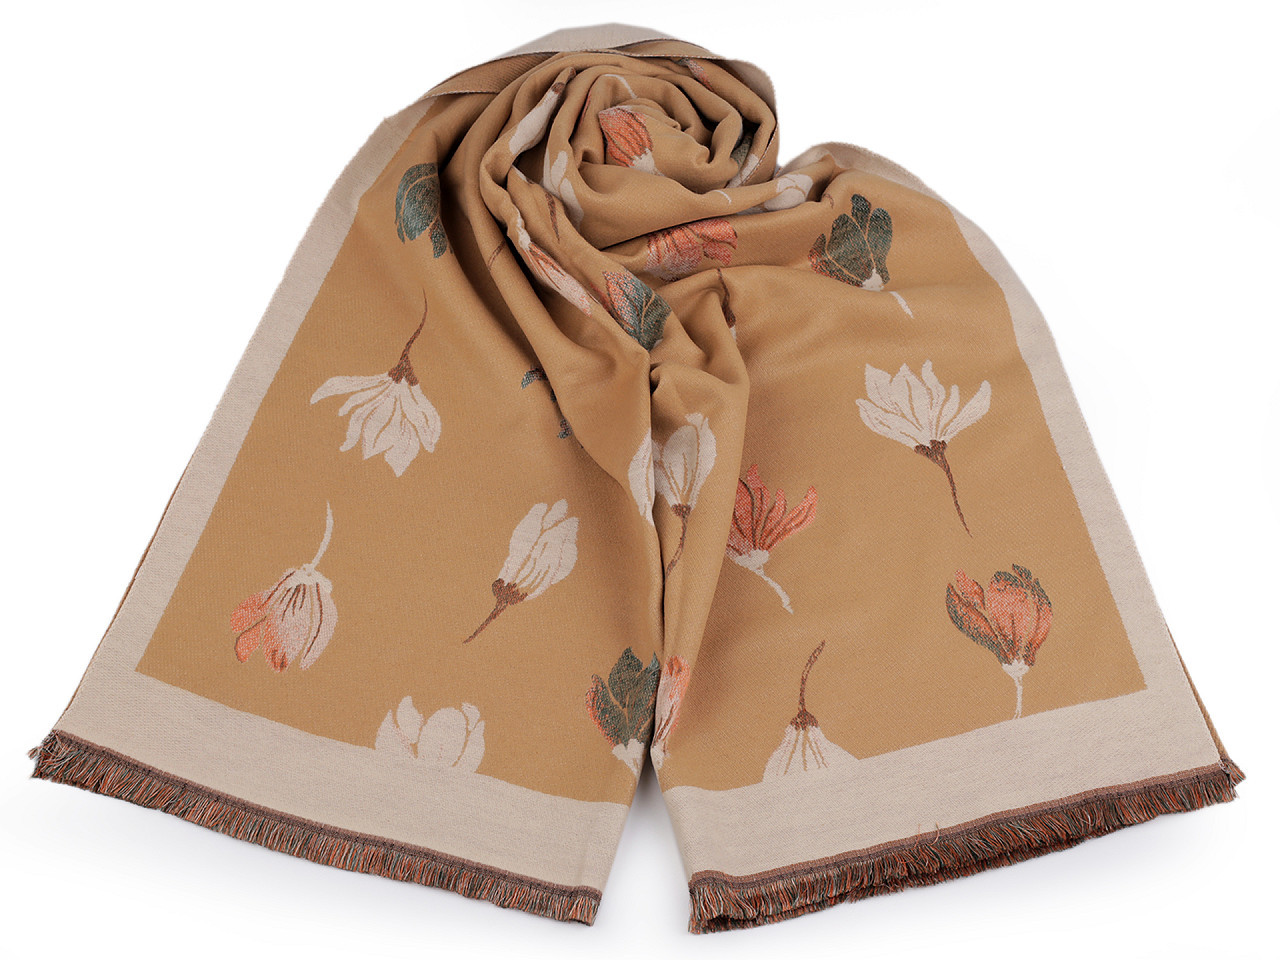 Šátek / šála typu kašmír s třásněmi, květy 65x190 cm, barva 10 béžová velbloudí béžová světlá